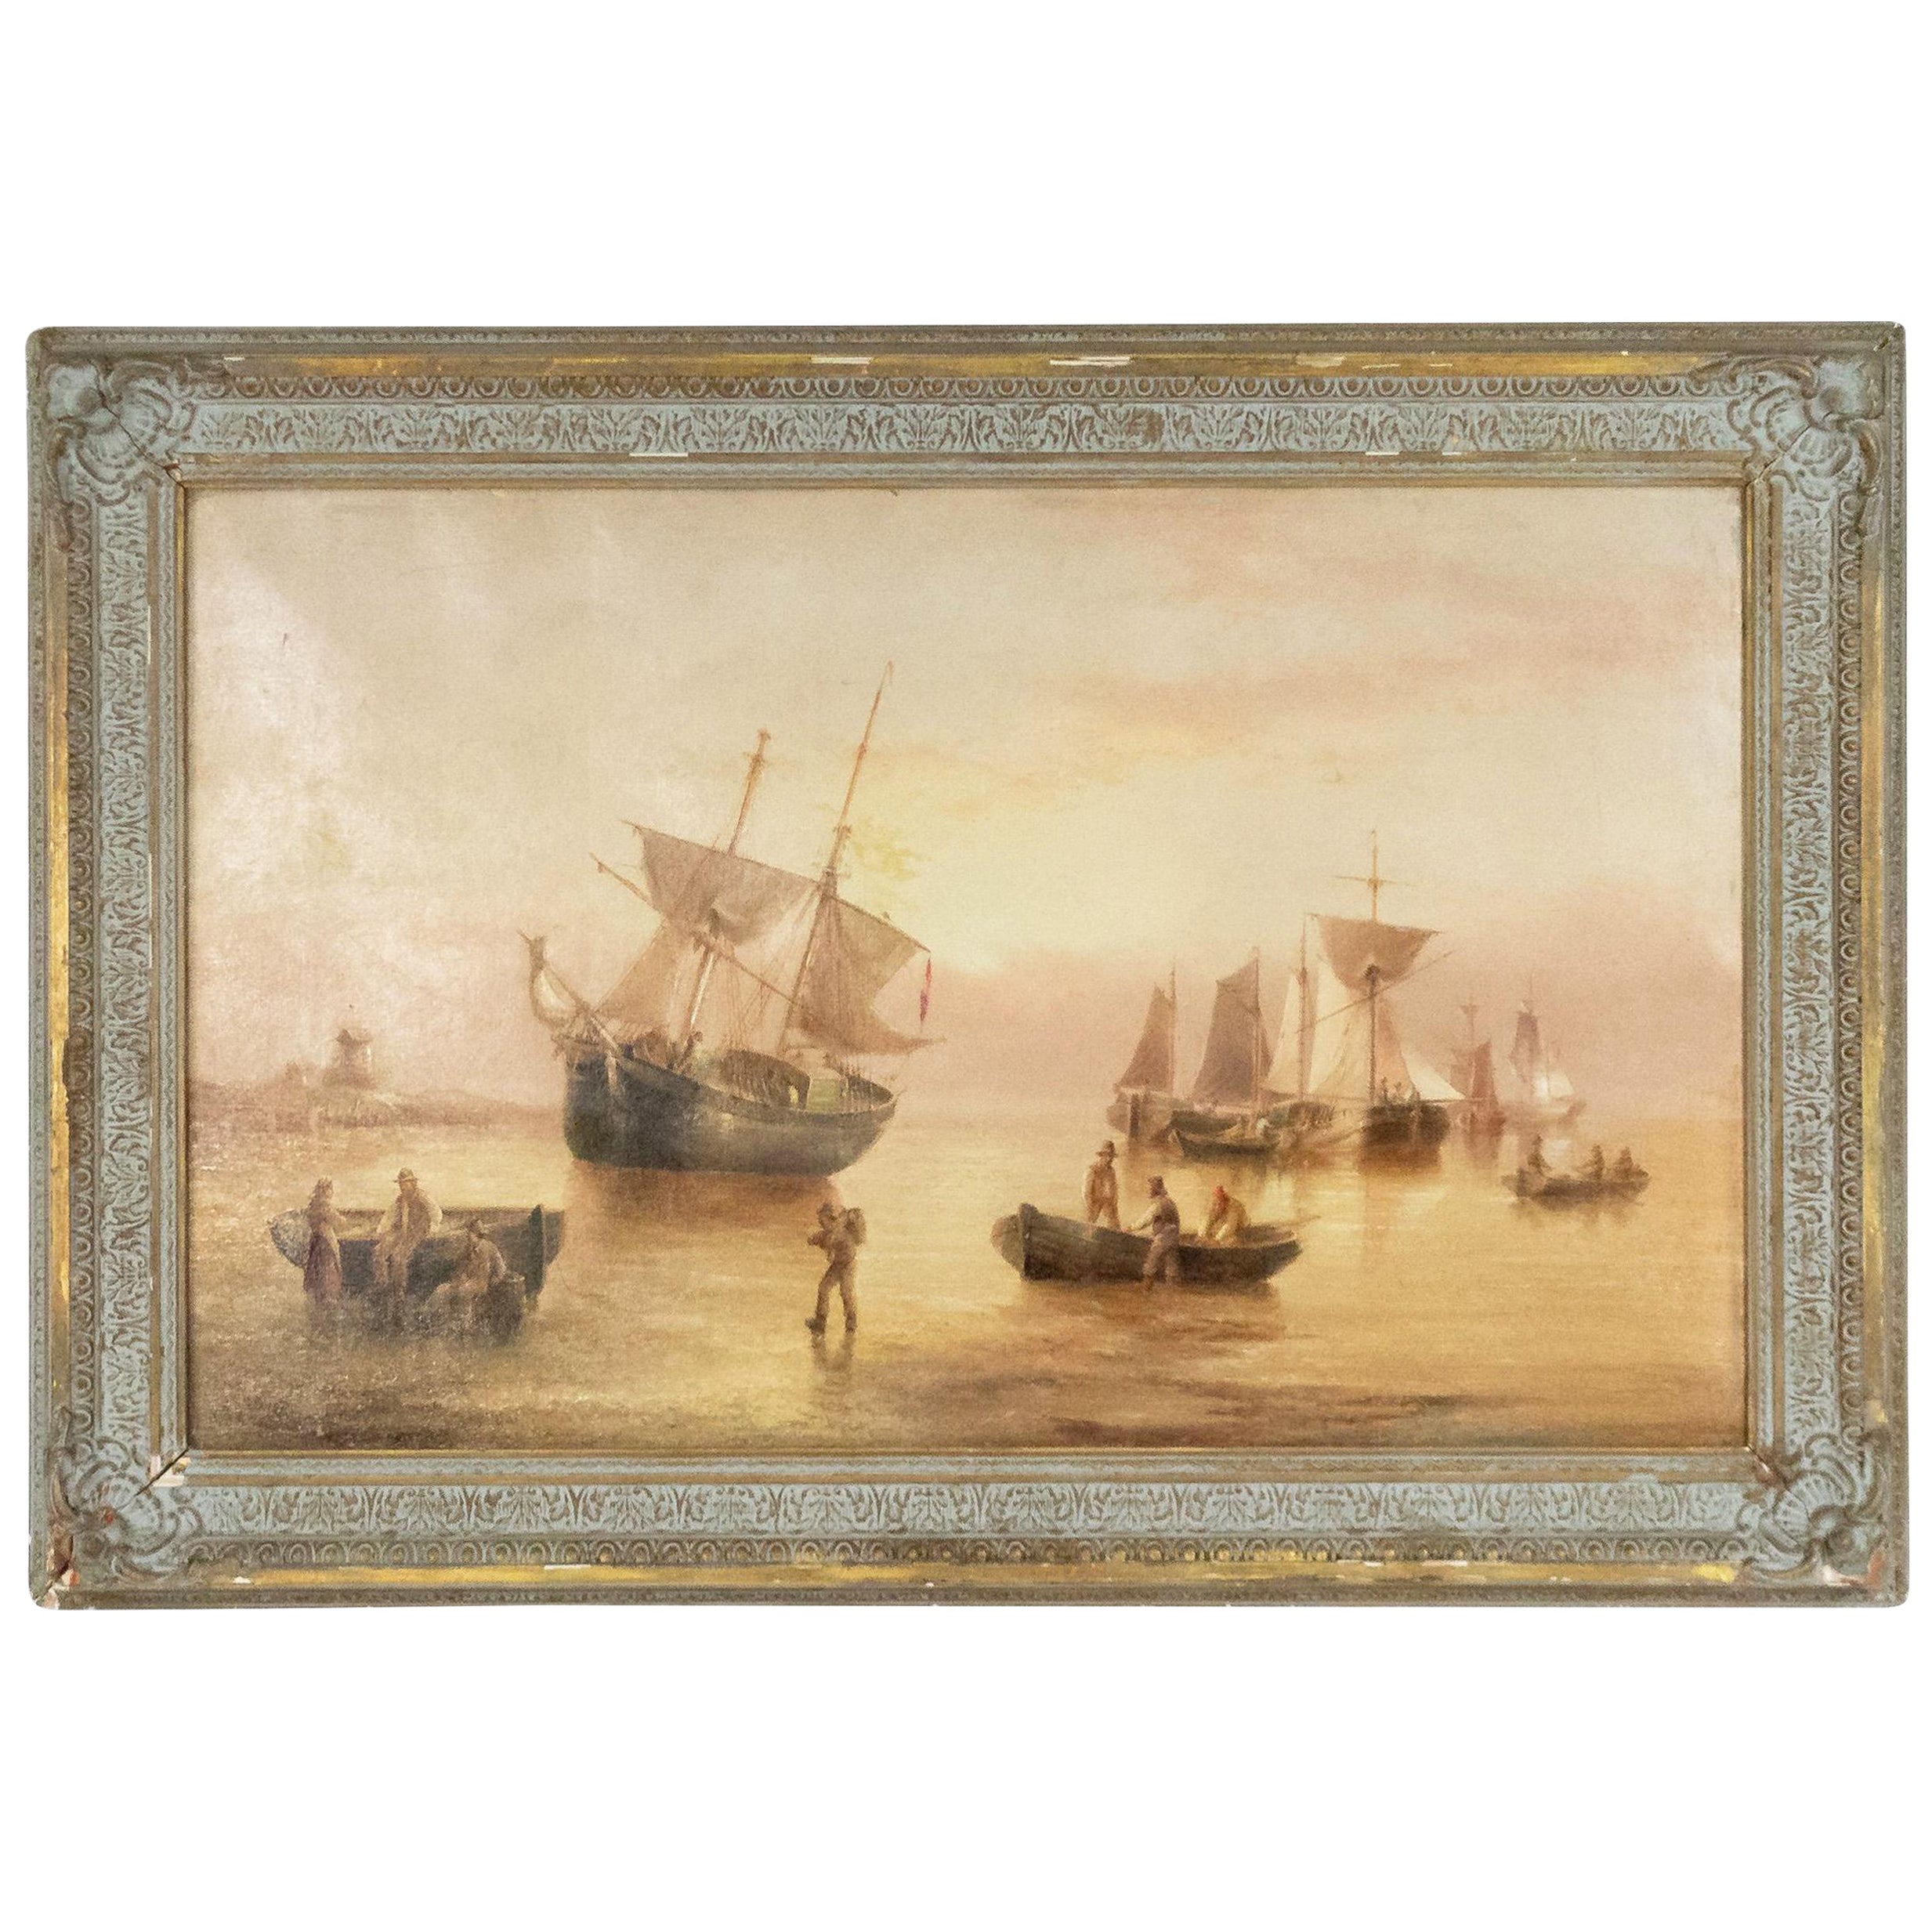 Englisches viktorianisches Fischerboot-Gemälde in vergoldetem Rahmen aus dem 19. Jahrhundert